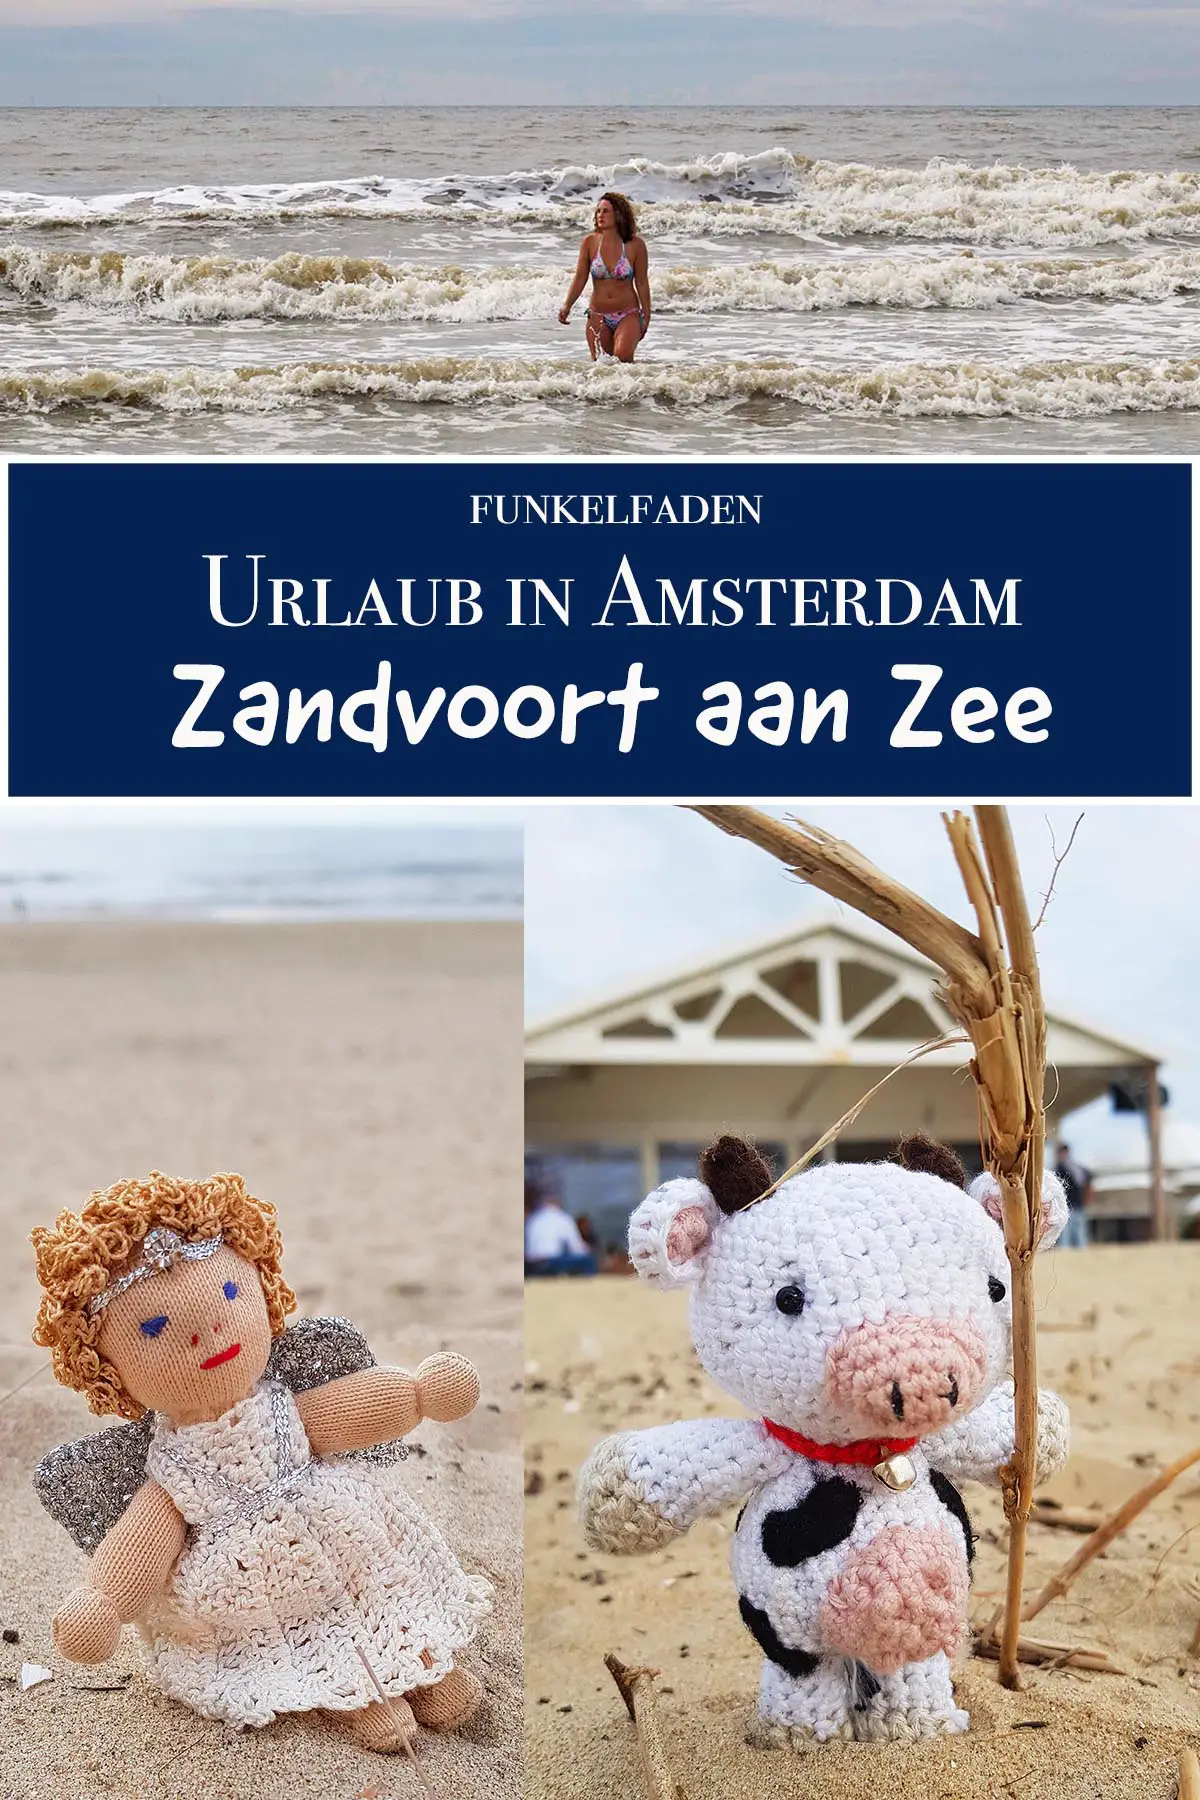 Urlaub in Zandvoort aan Zee